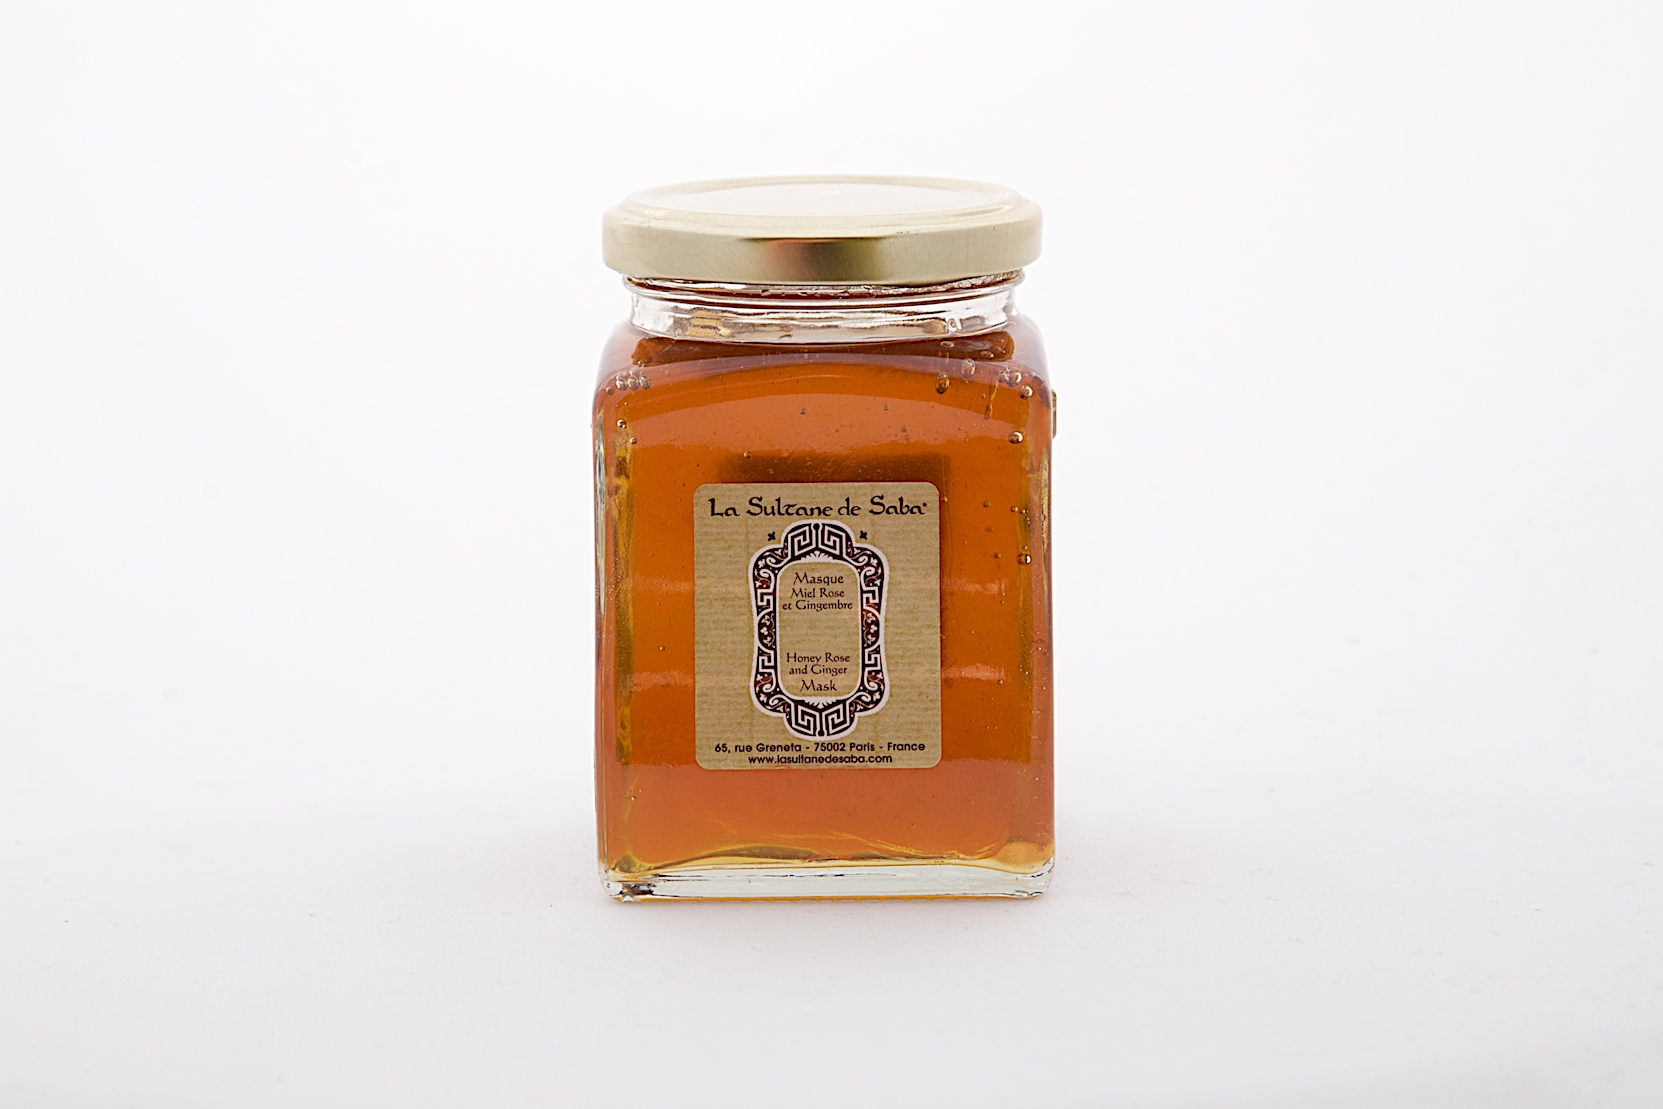 Indulging in Honey – La Sultane de Saba